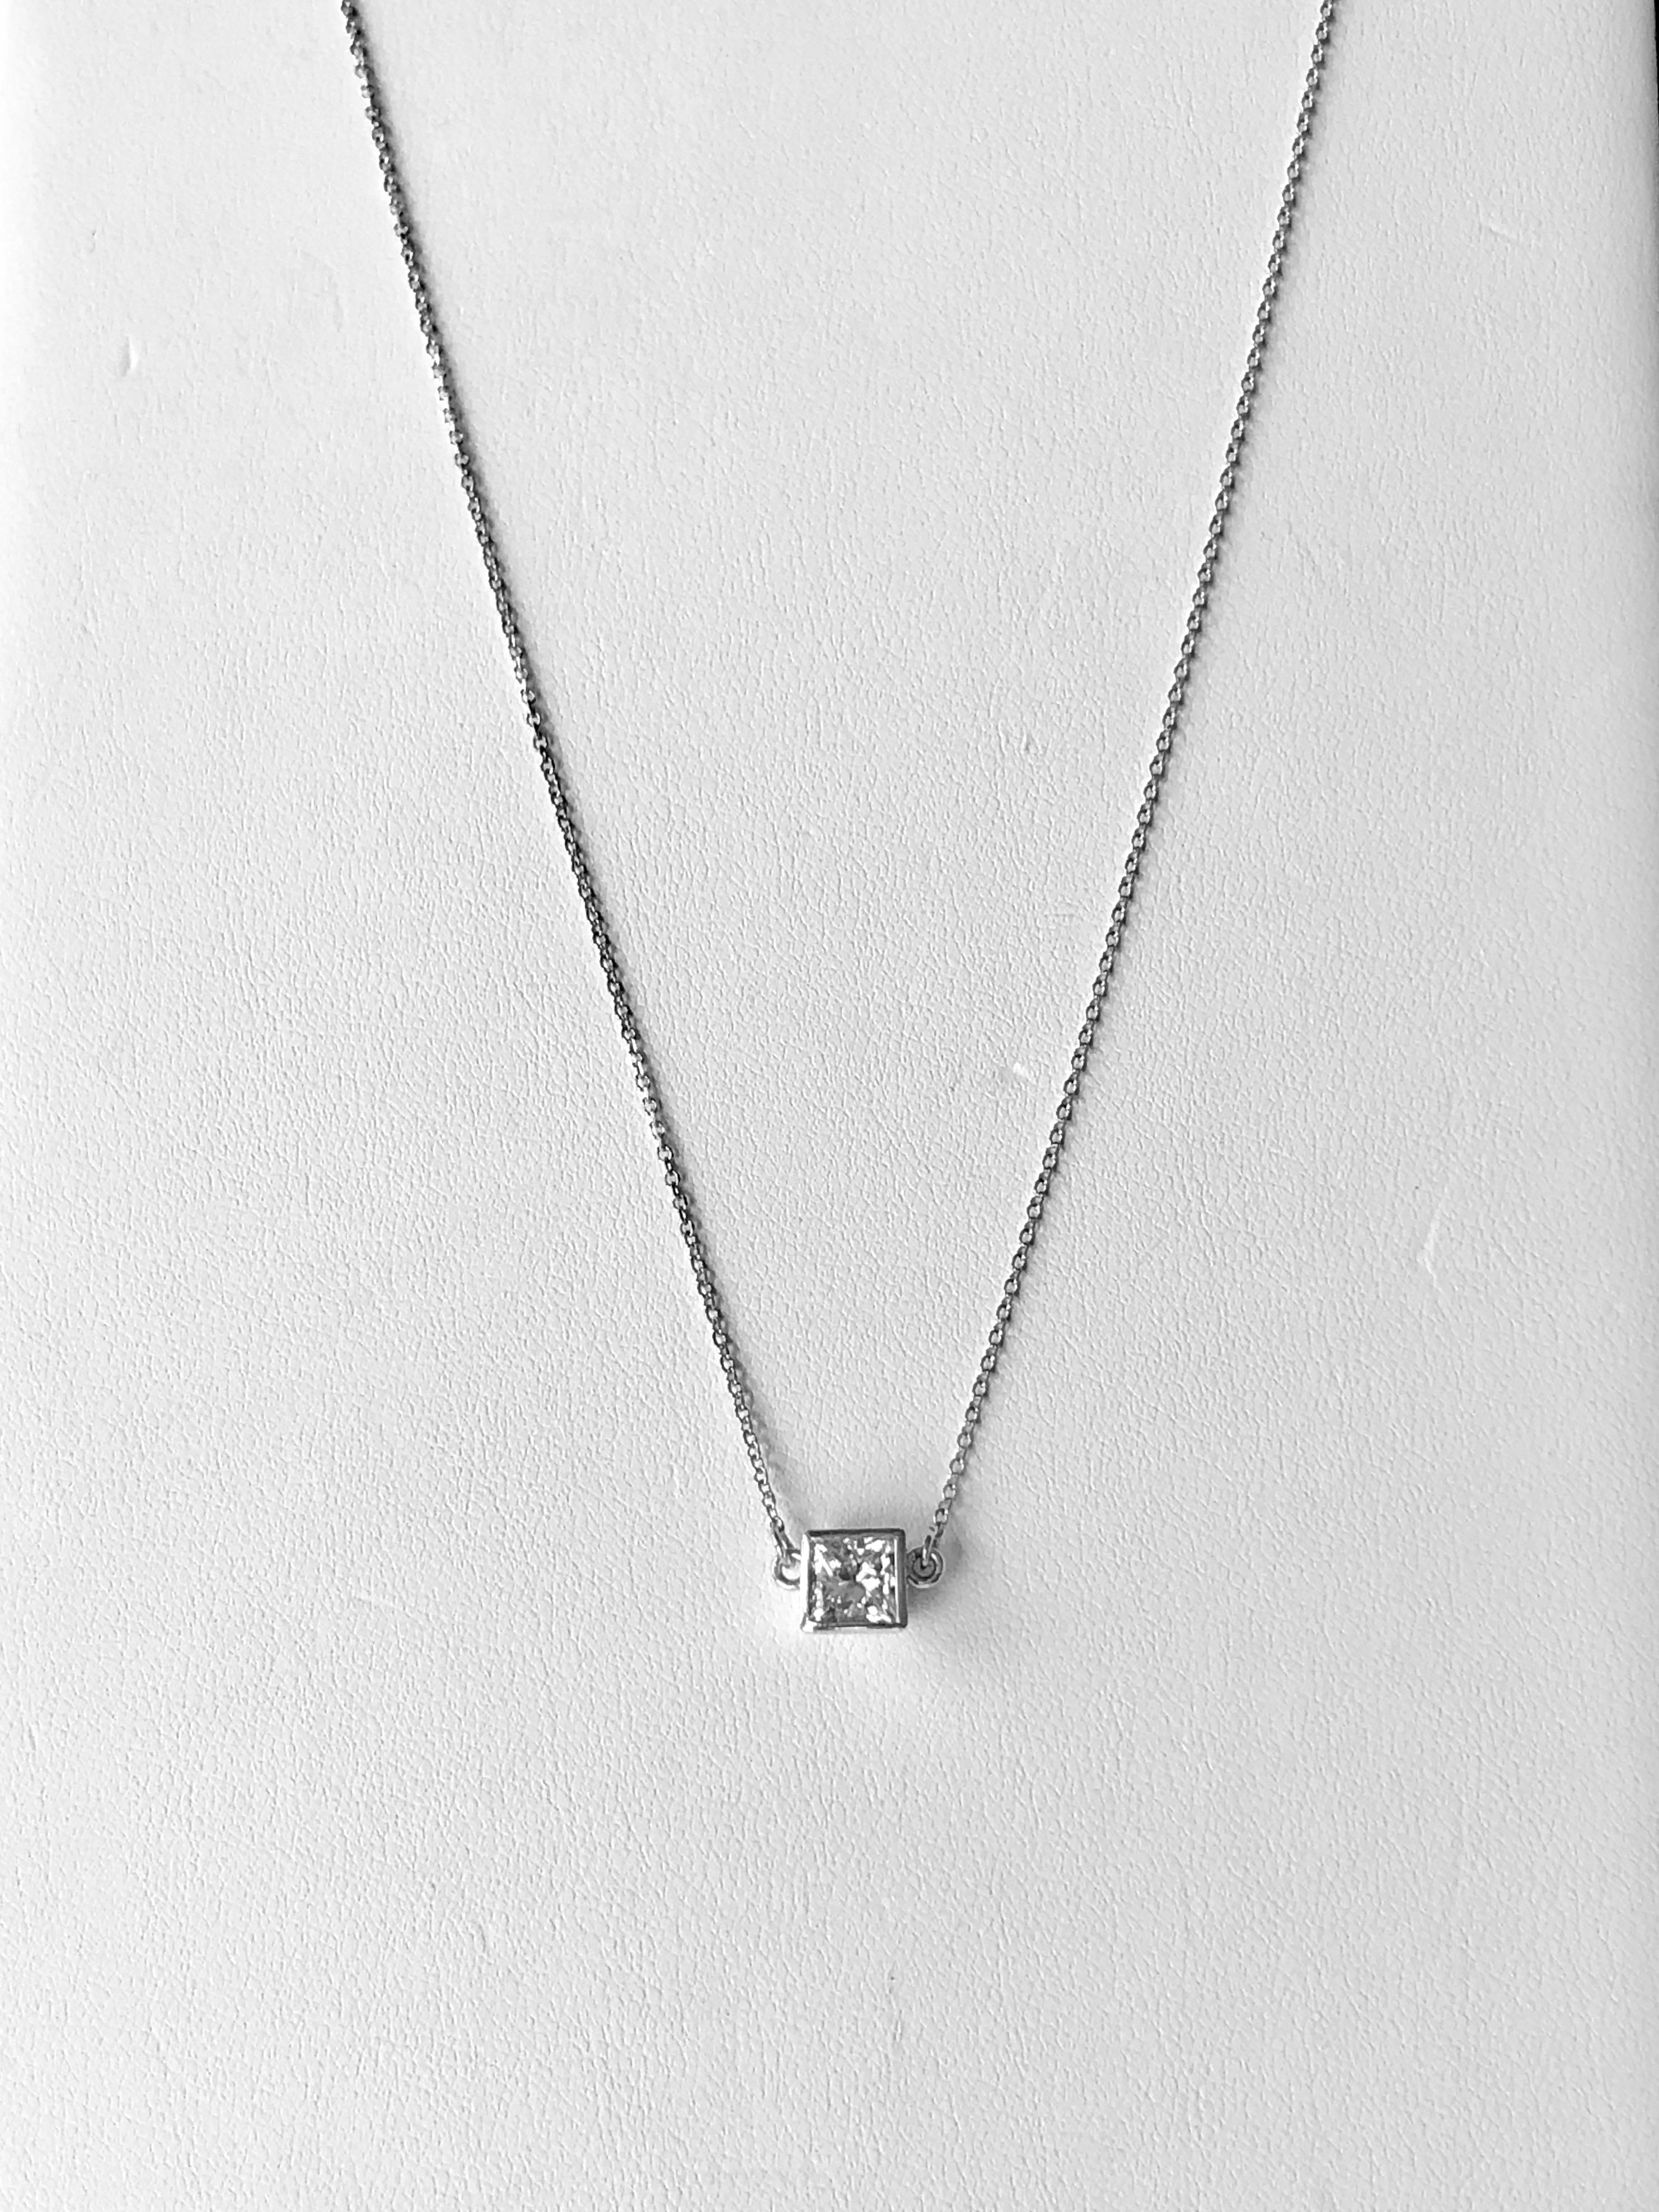 1.00 Carat Princess Cut Diamond Solitaire Pendant Necklace For Sale 1